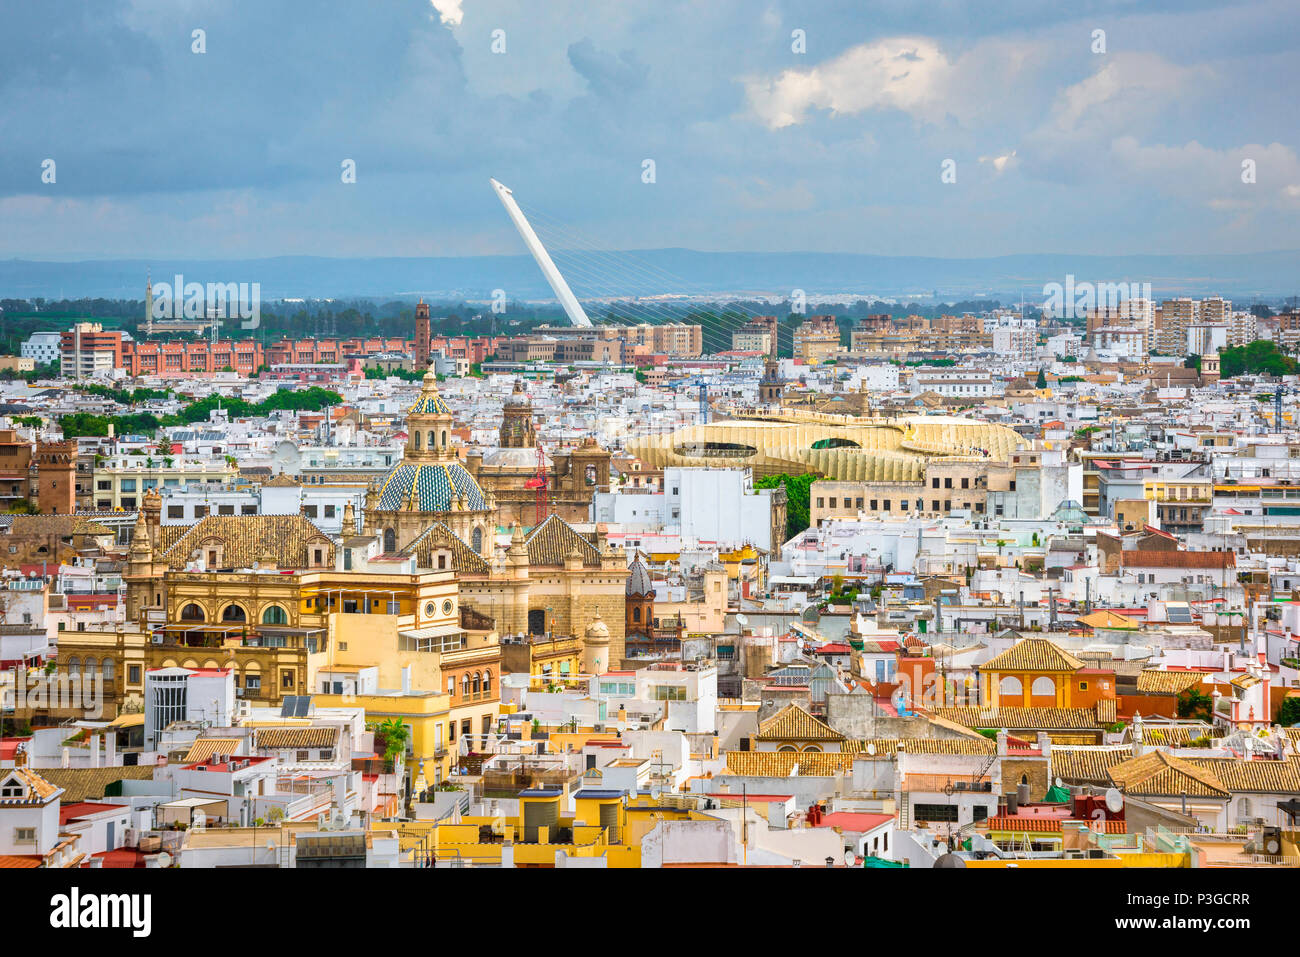 Ciudad Vieja de Sevilla, vista aérea del casco antiguo de Sevilla (Sevilla) con las setas y el Puente del Alamillo, visible en la distancia, España. Foto de stock